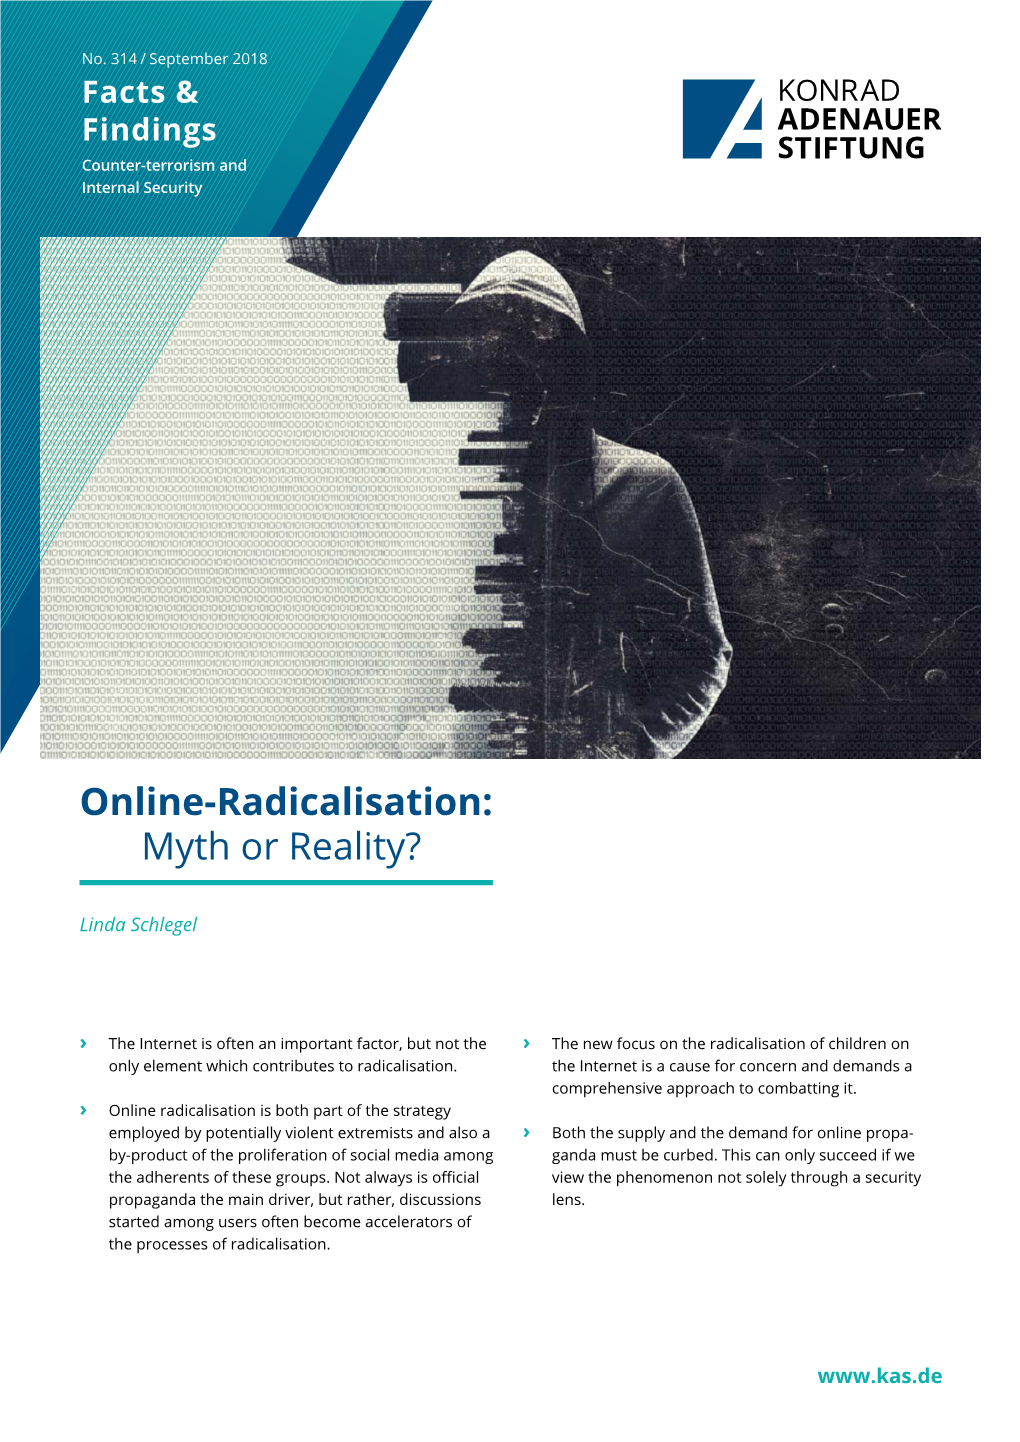 Online-Radicalisation: Myth Or Reality?